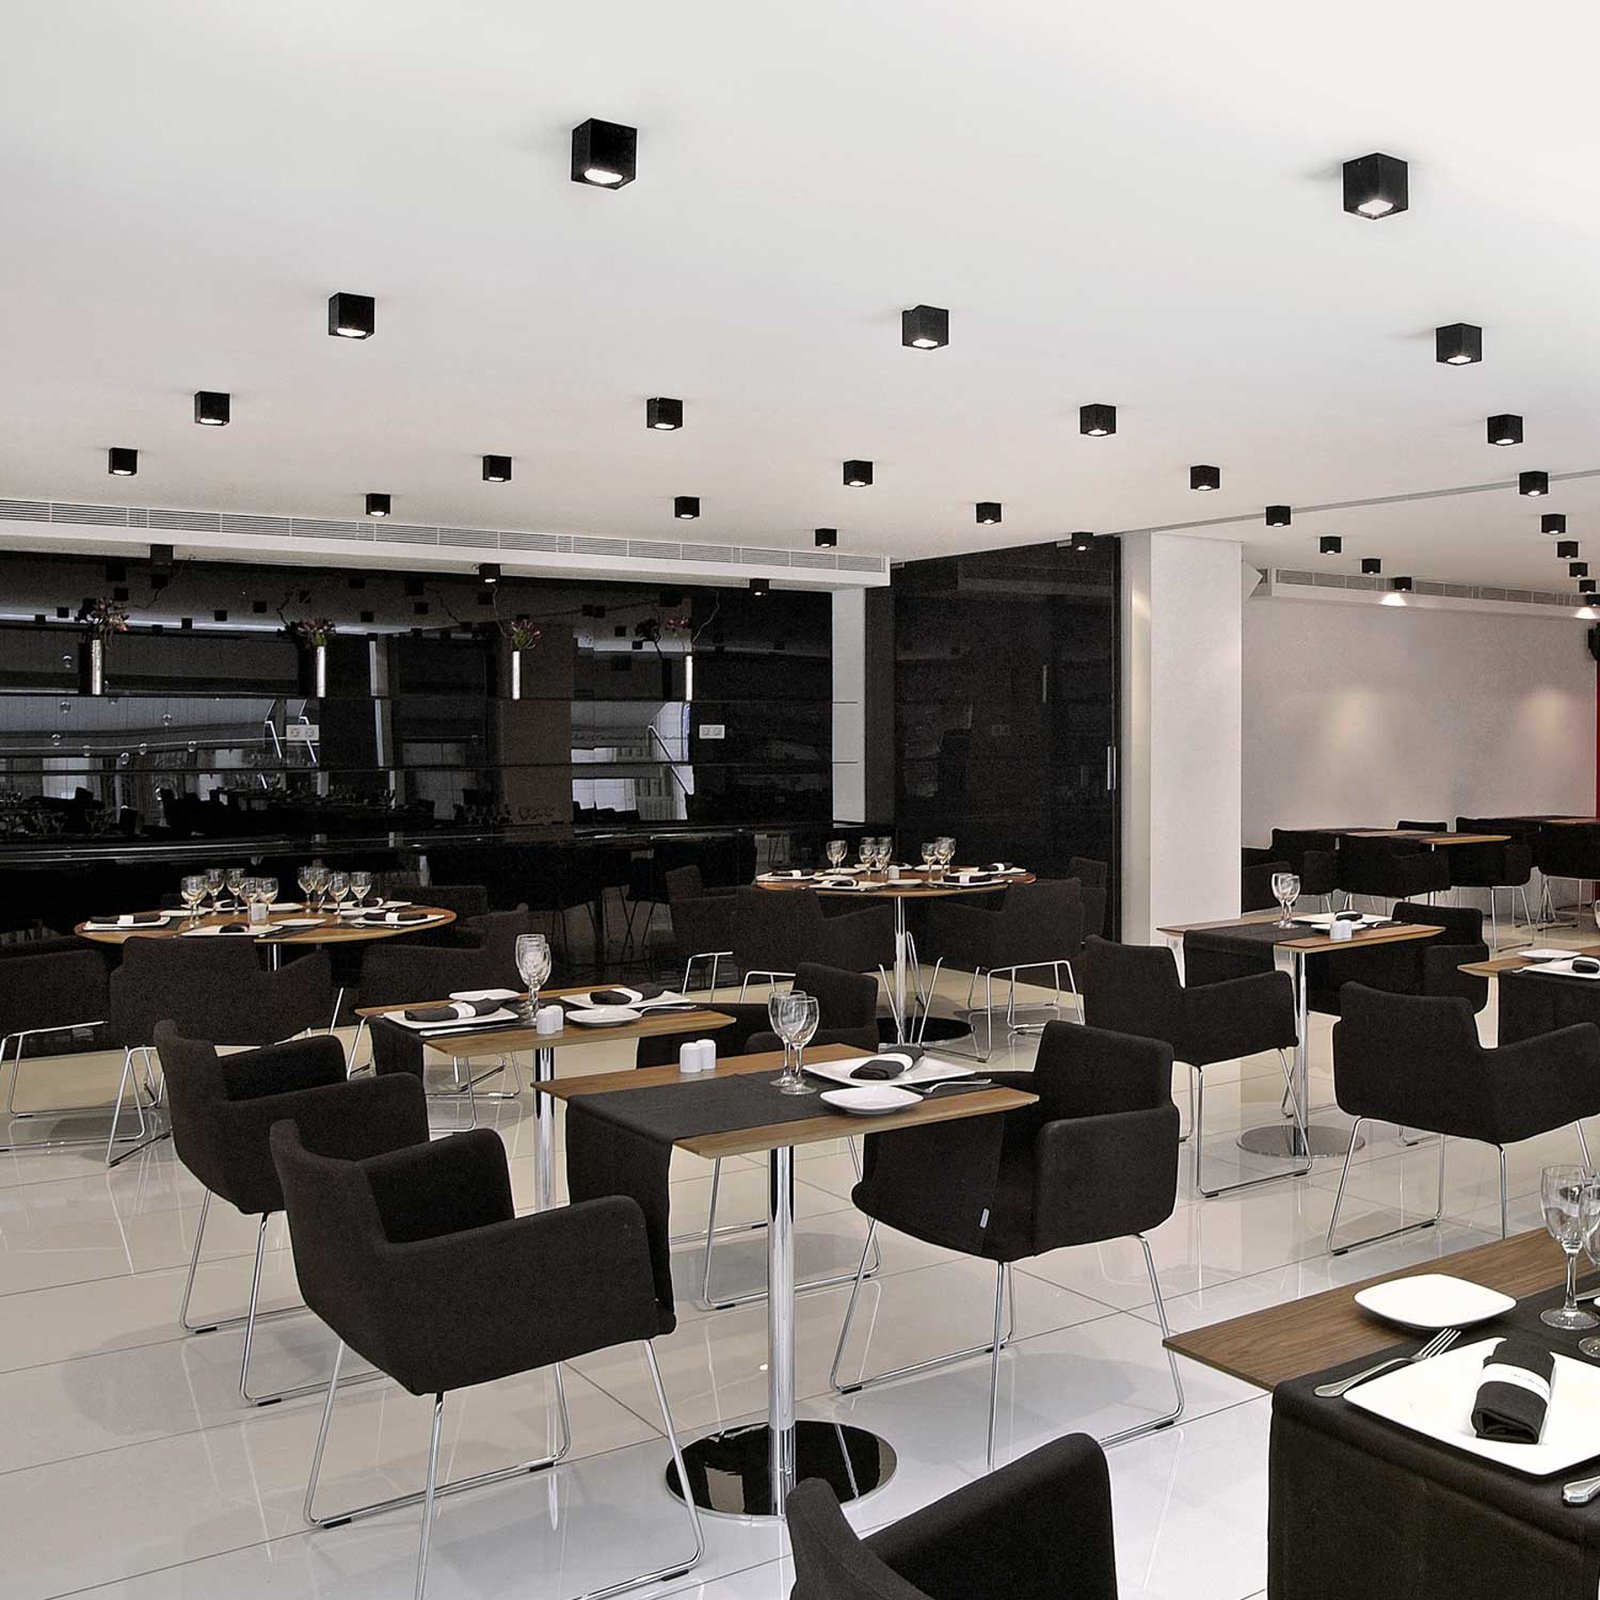 Milan Dau Spot ceiling light in cube shape black